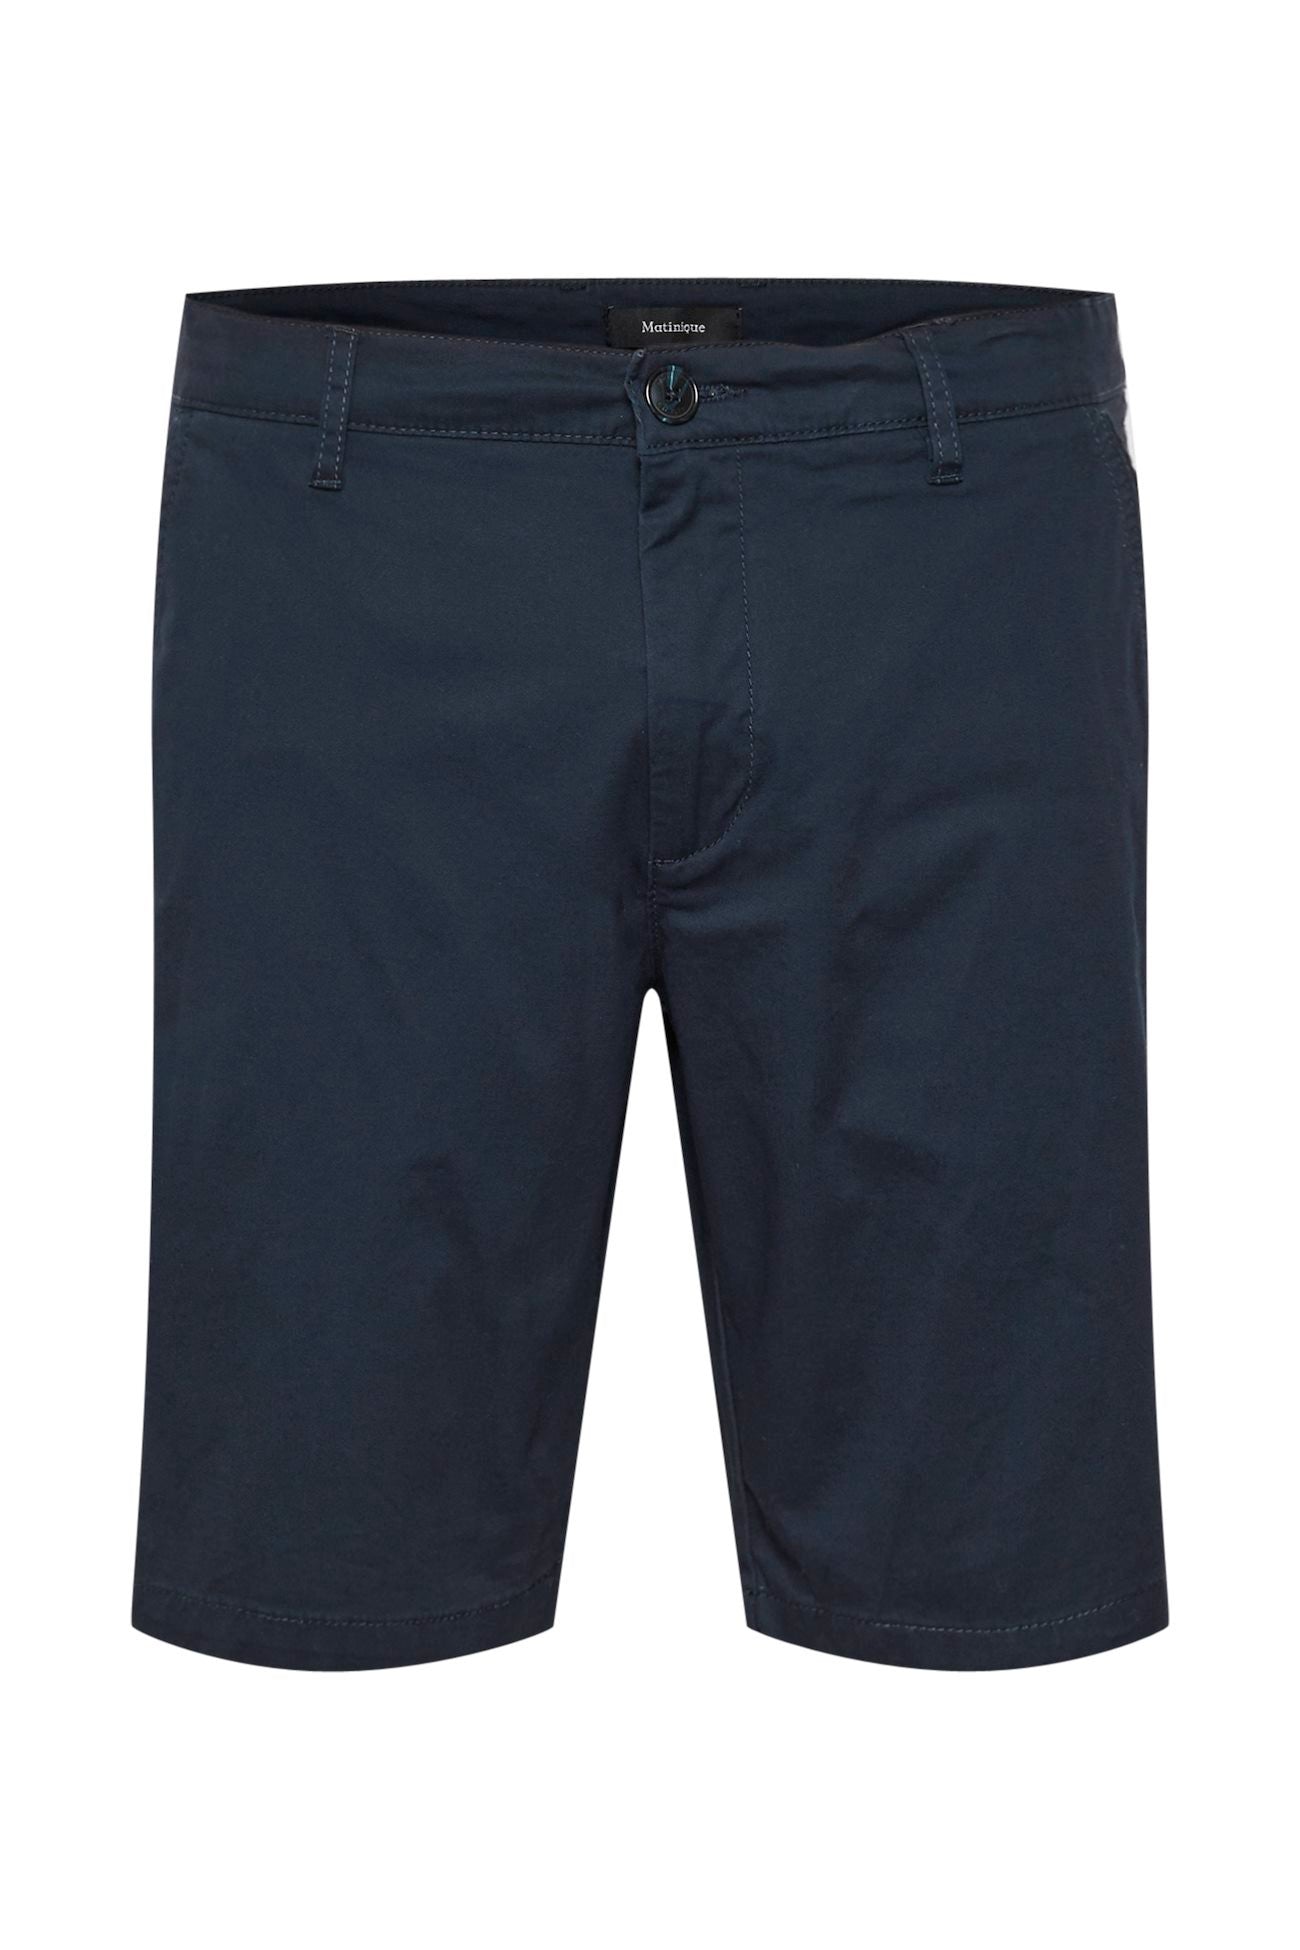 Matinique Dark Navy Cotton Shorts